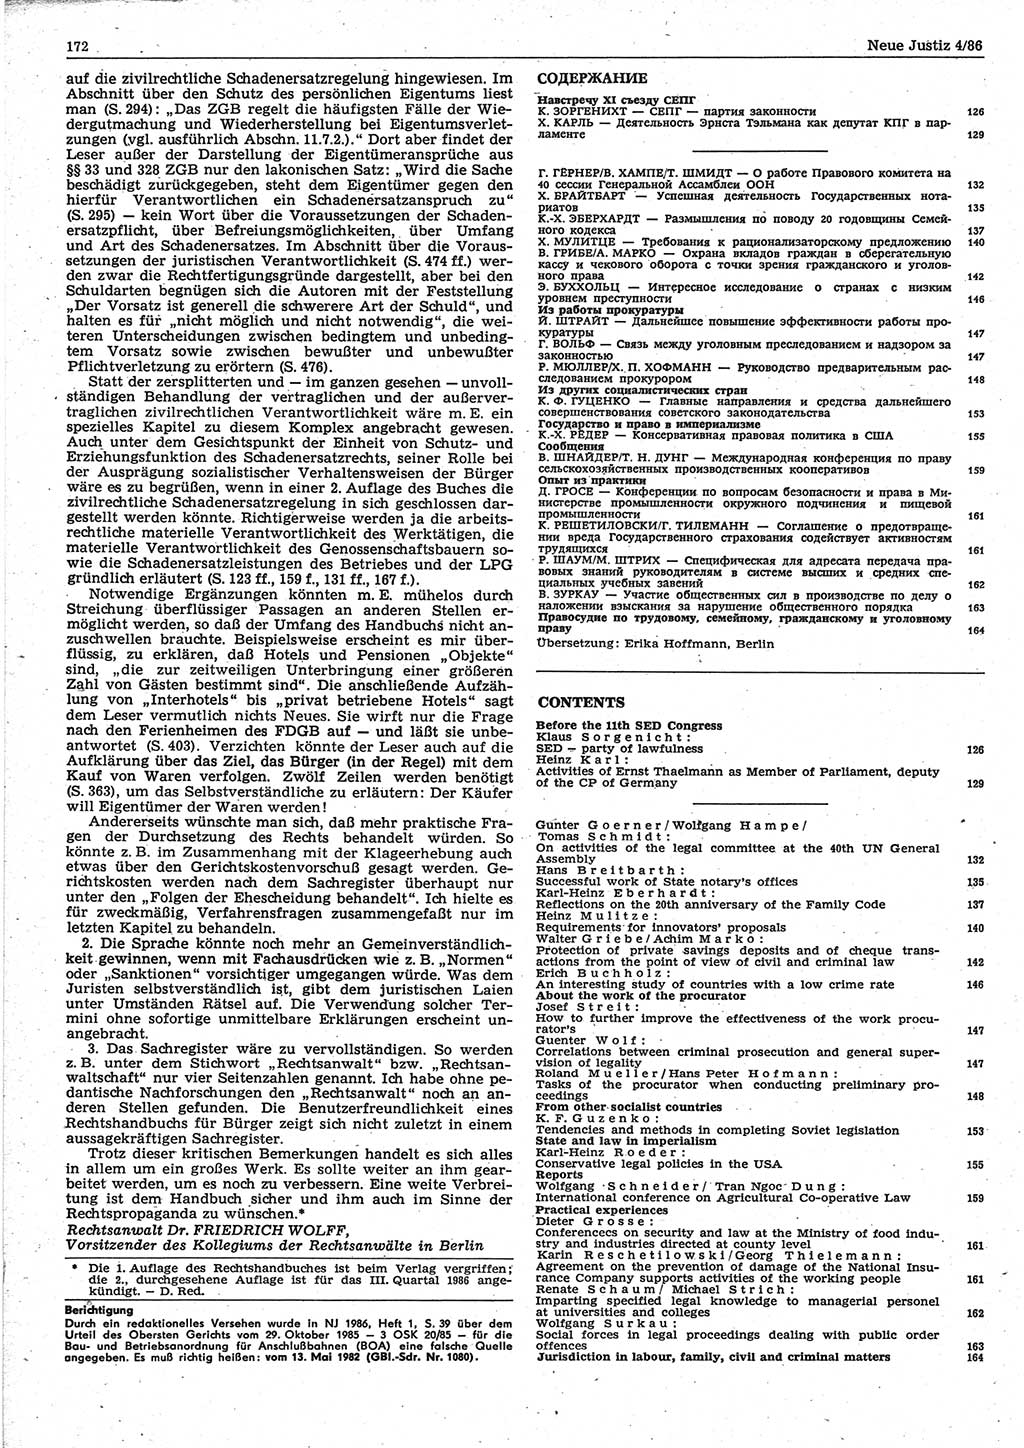 Neue Justiz (NJ), Zeitschrift für sozialistisches Recht und Gesetzlichkeit [Deutsche Demokratische Republik (DDR)], 40. Jahrgang 1986, Seite 172 (NJ DDR 1986, S. 172)